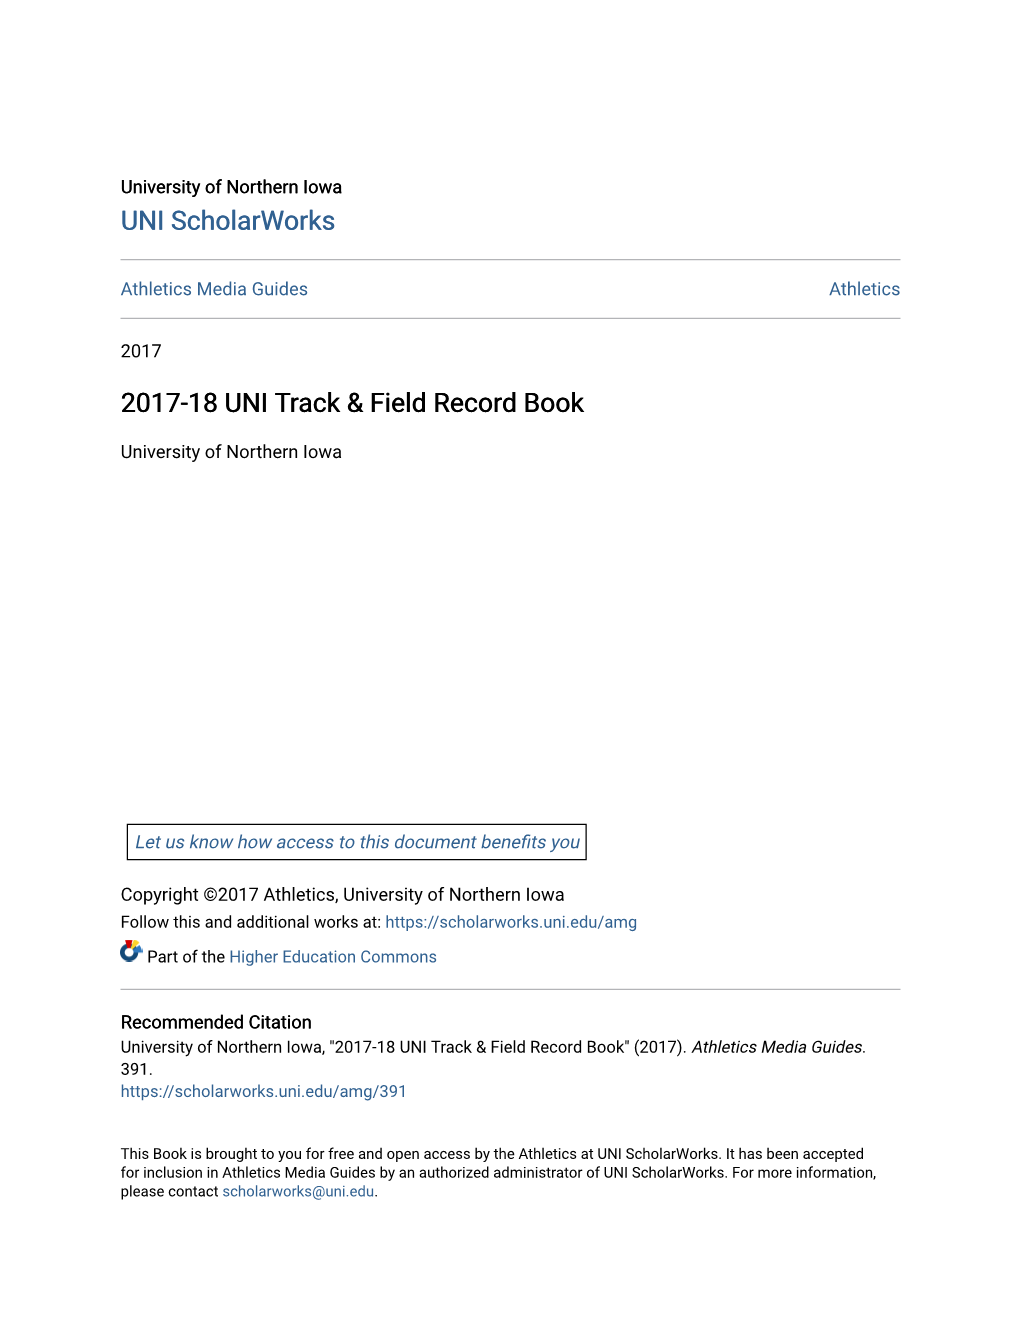 2017-18 UNI Track & Field Record Book